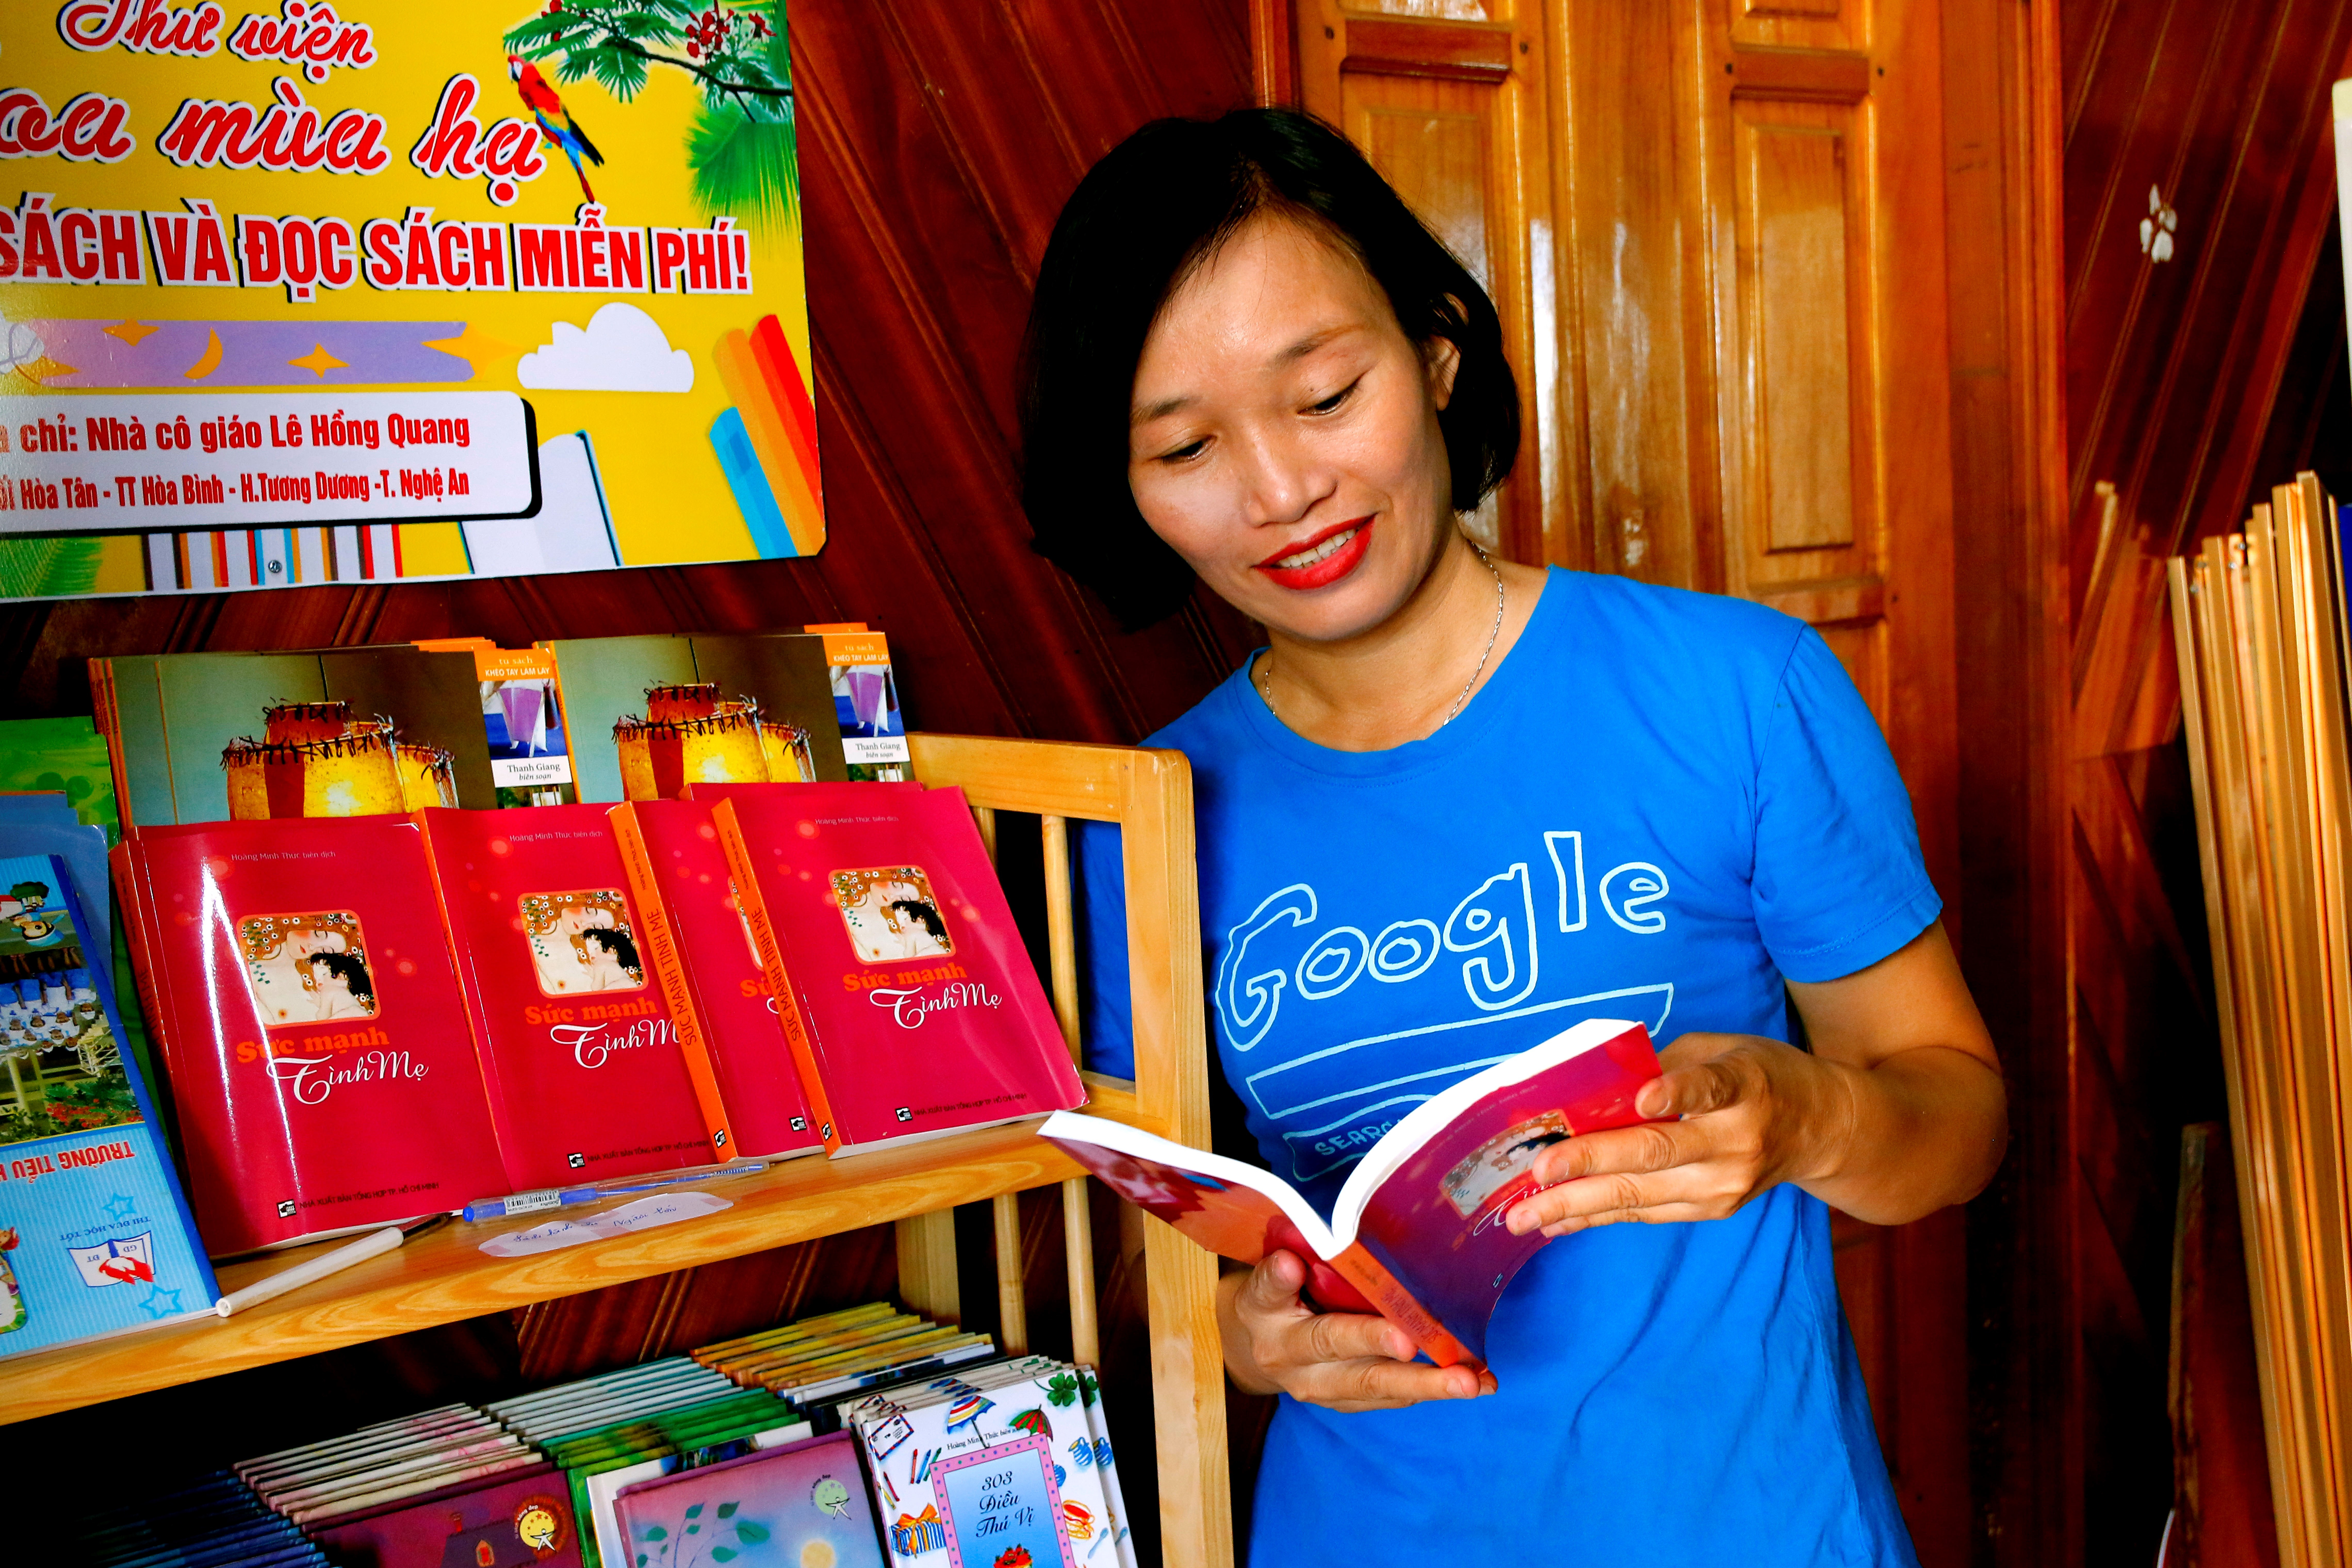  Hiện thư viện sách của cô Quang có gần 500 đầu sách. Ảnh: Đình Tuân